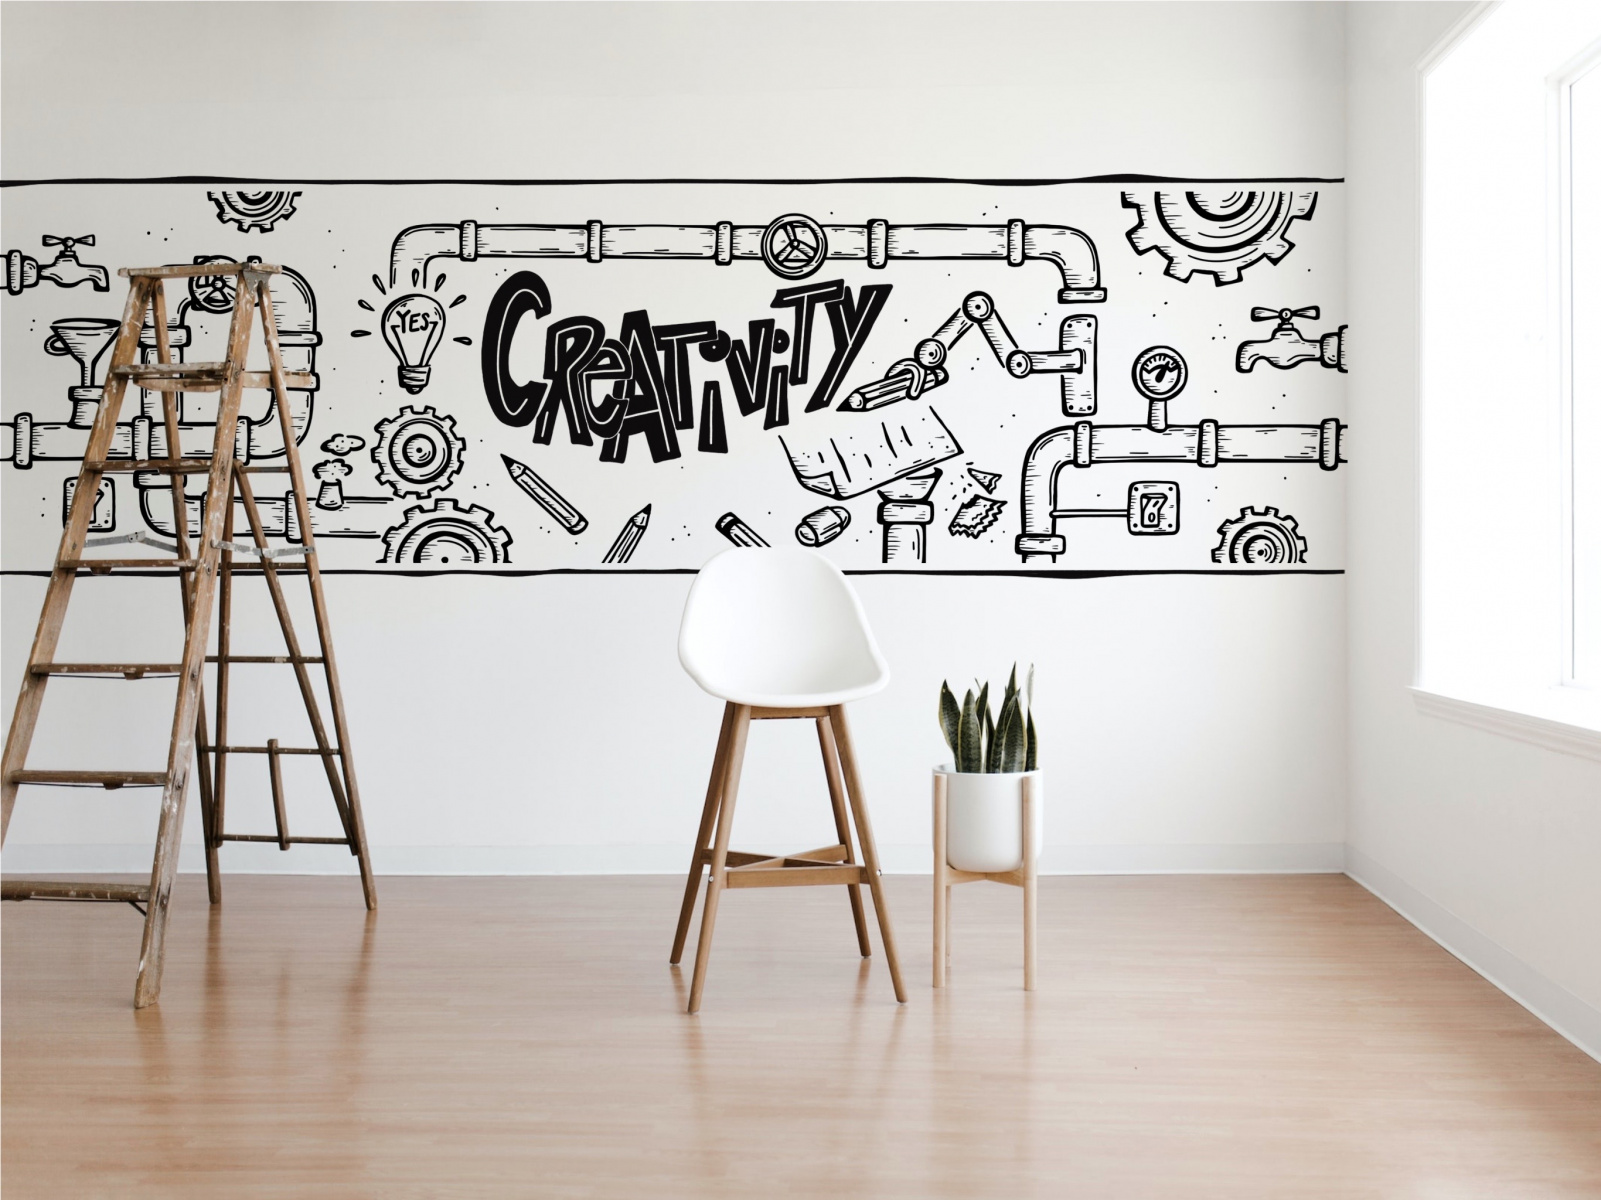 Een zakelijke maar creatieve muurtekening in een kantoorruimte als lijntekening in zwart op een witte muur.